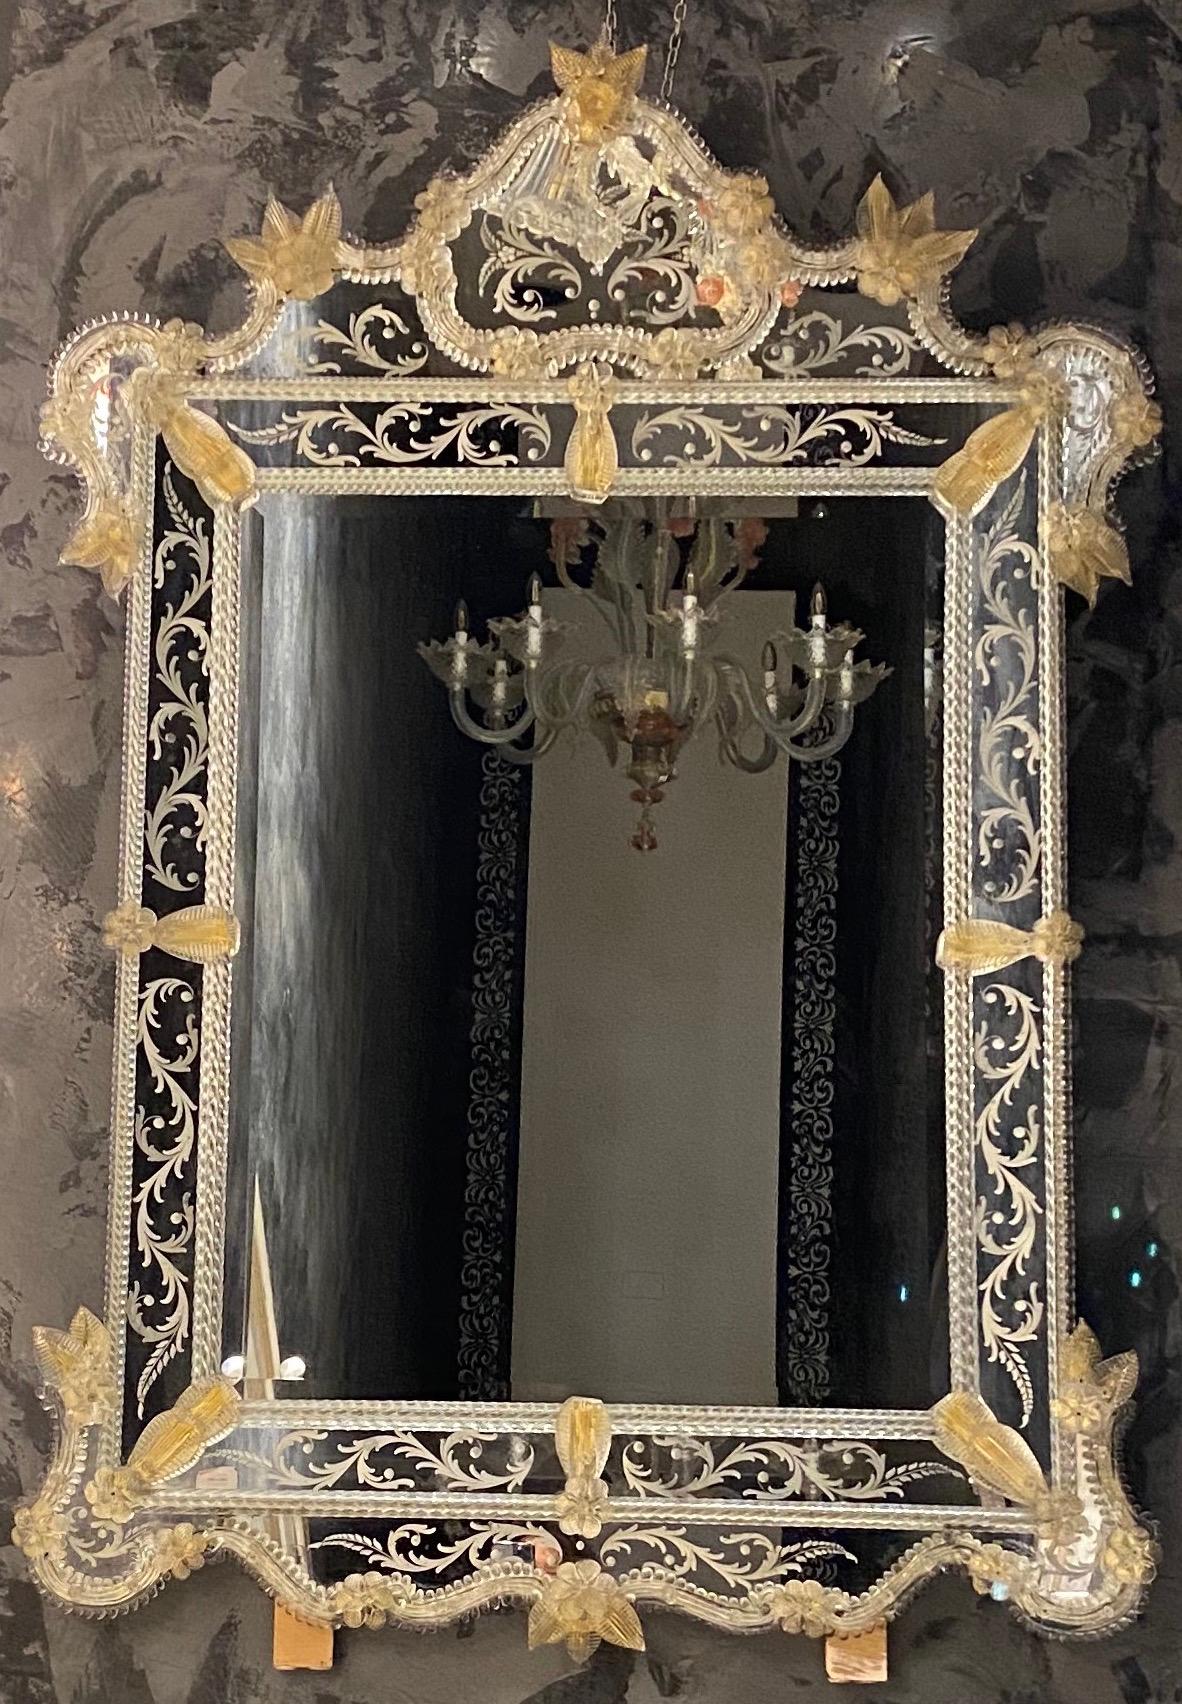 Dieser schöne venezianische Spiegel ist mit geätzten Blumenmotiven versehen, die den Spiegelrahmen zieren. Entlang der Ränder des Rahmens befinden sich gläserne Seilakzente und zahlreiche goldene Glasblumen. Ausgeführt von dem großen Meister von